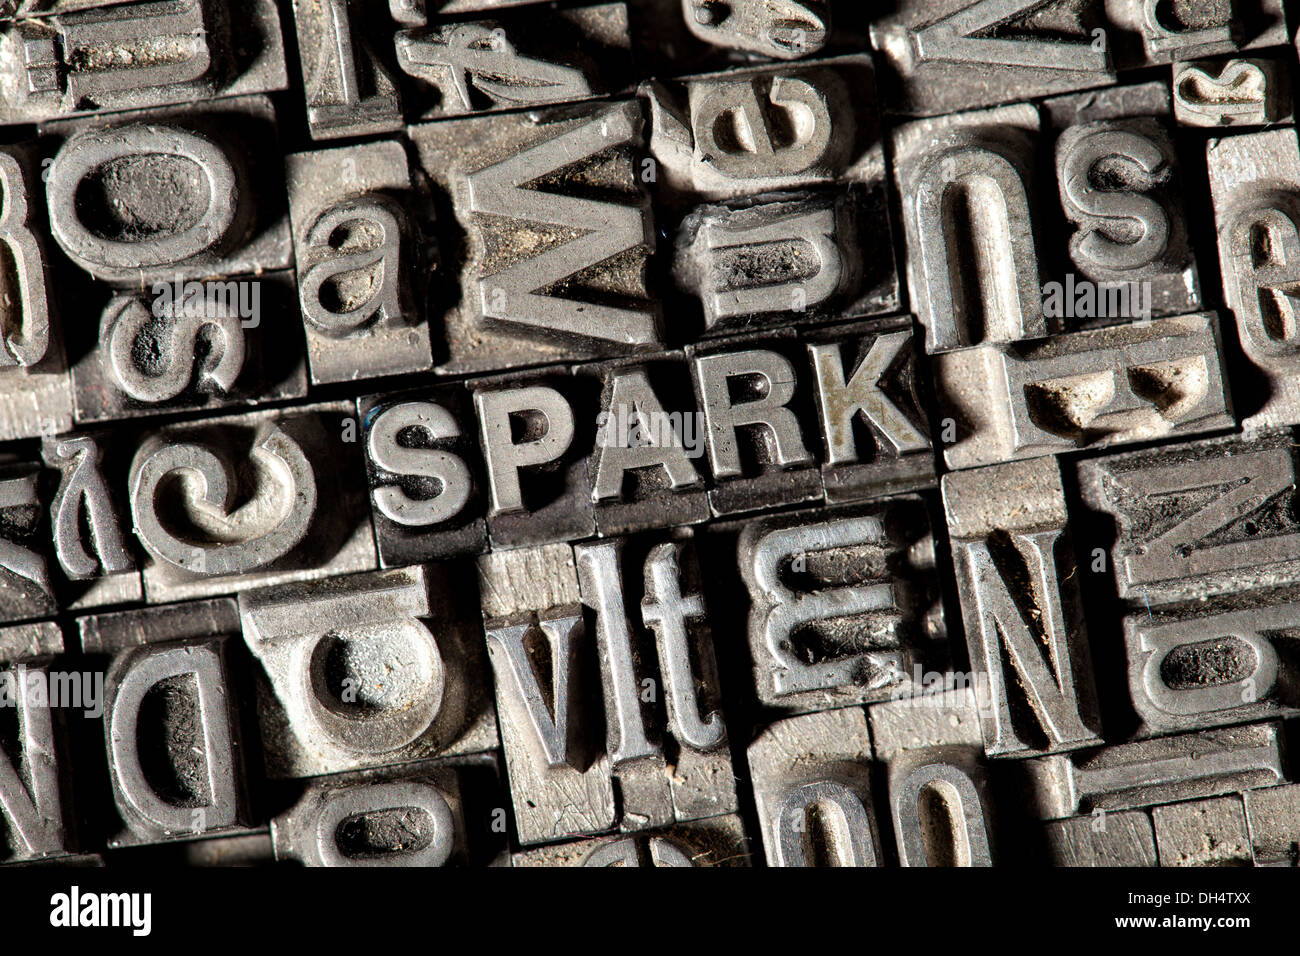 Antiguas letras de plomo que forman la palabra "Parque" Foto de stock